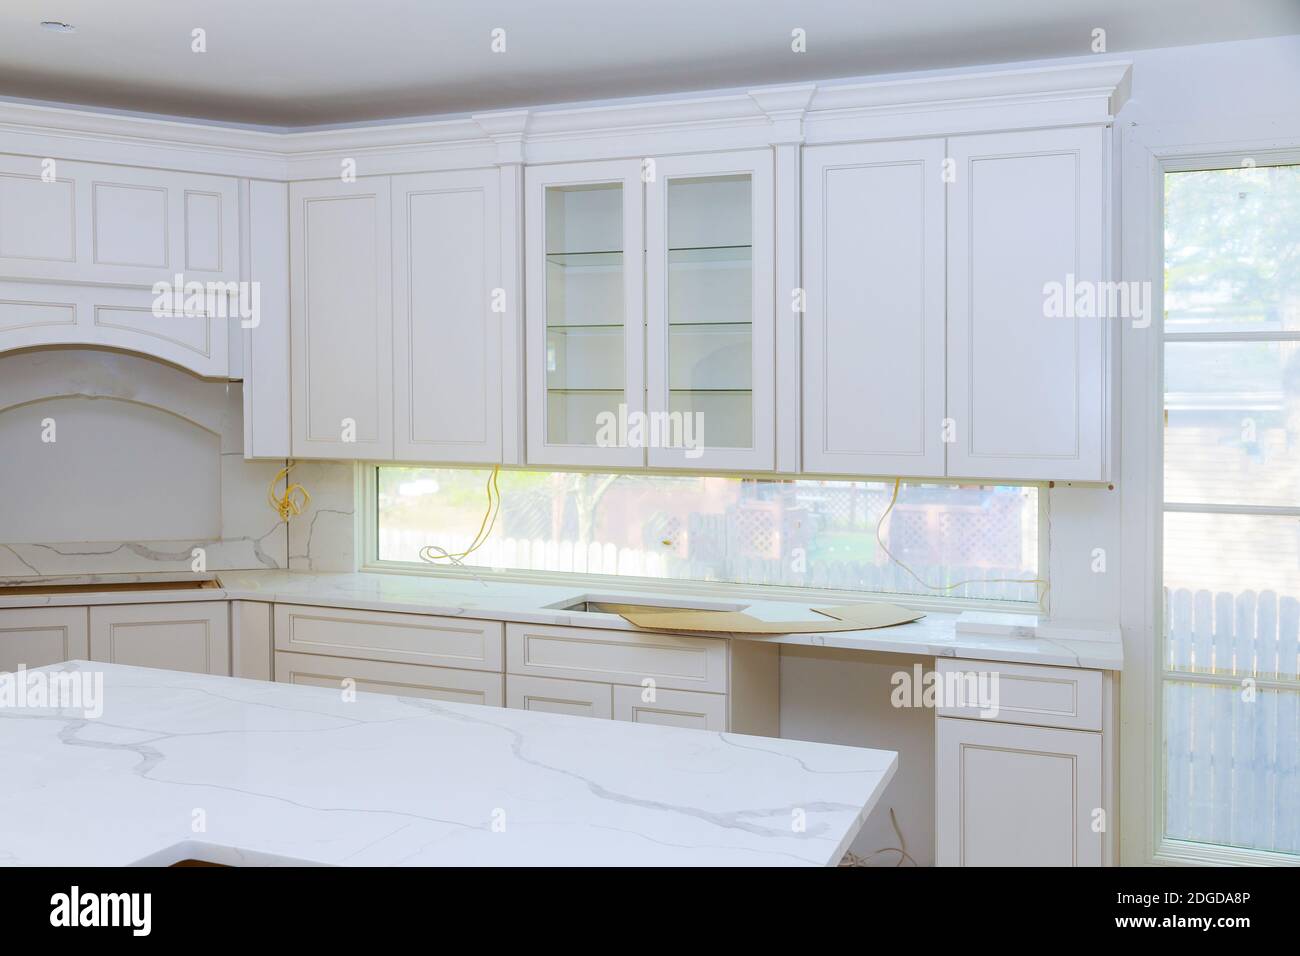 Mejoras del hogar cocina remodela view instalado en una cocina nueva Foto de stock